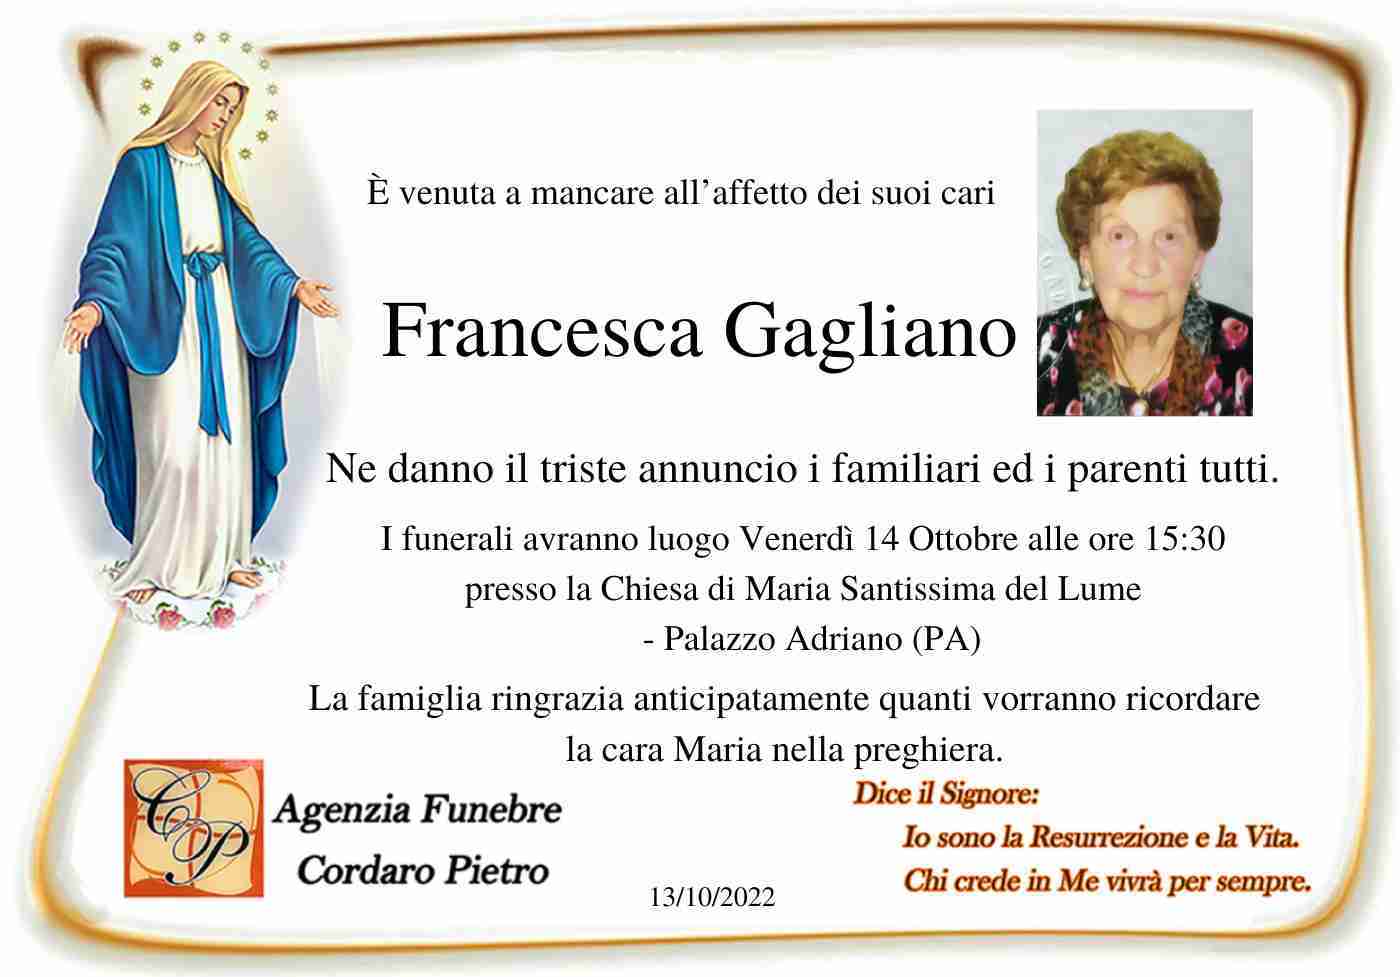 Francesca Gagliano